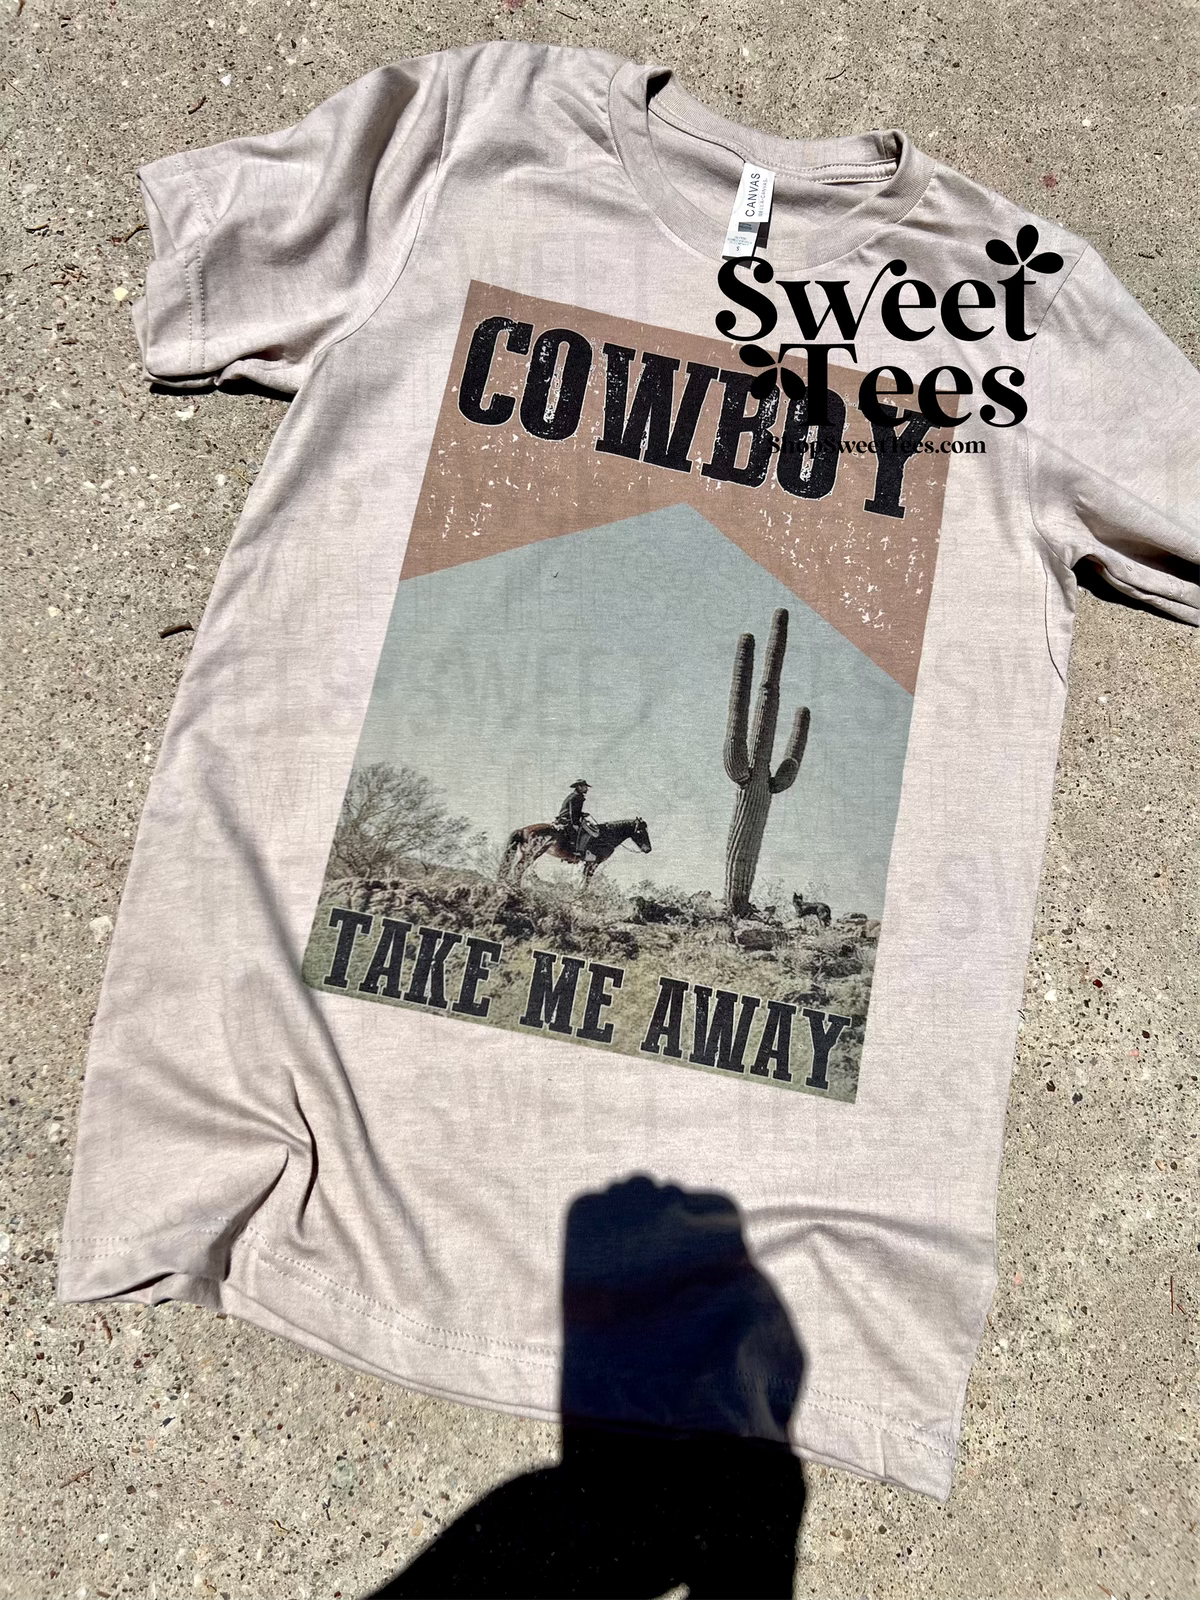 cowboy t shirts near me